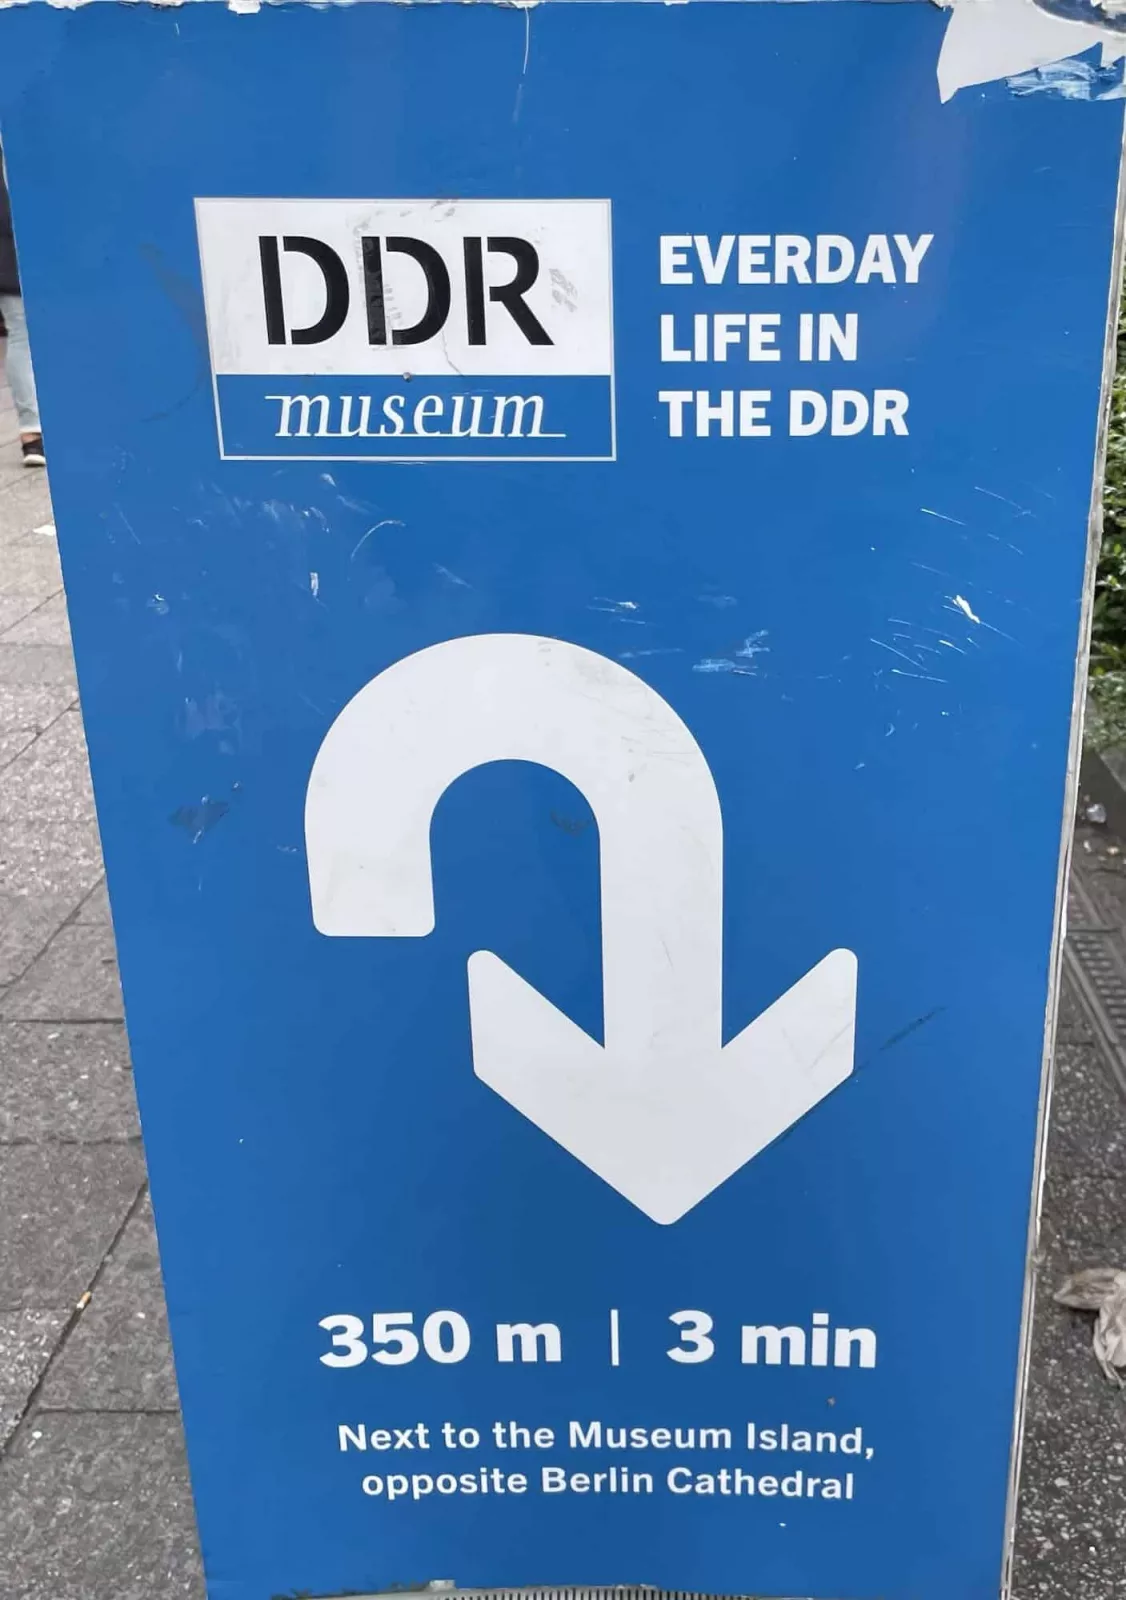 Reklameschild für das DDR-Museum in Berlin. Stegt im Englischen DDR statt GDR.